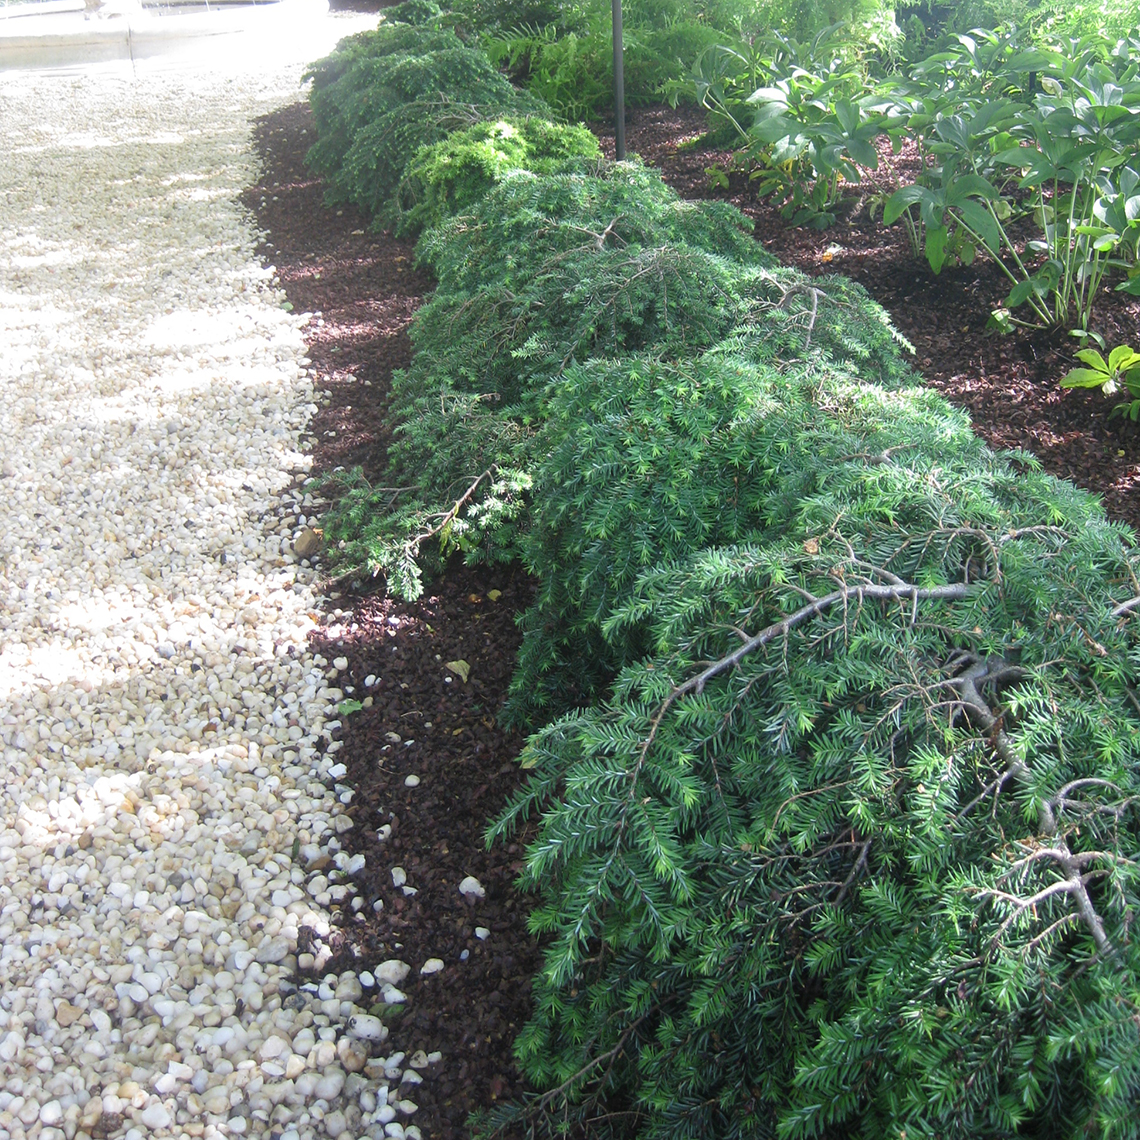 A hedge of low growing dwarf Jeddeloh hemlock